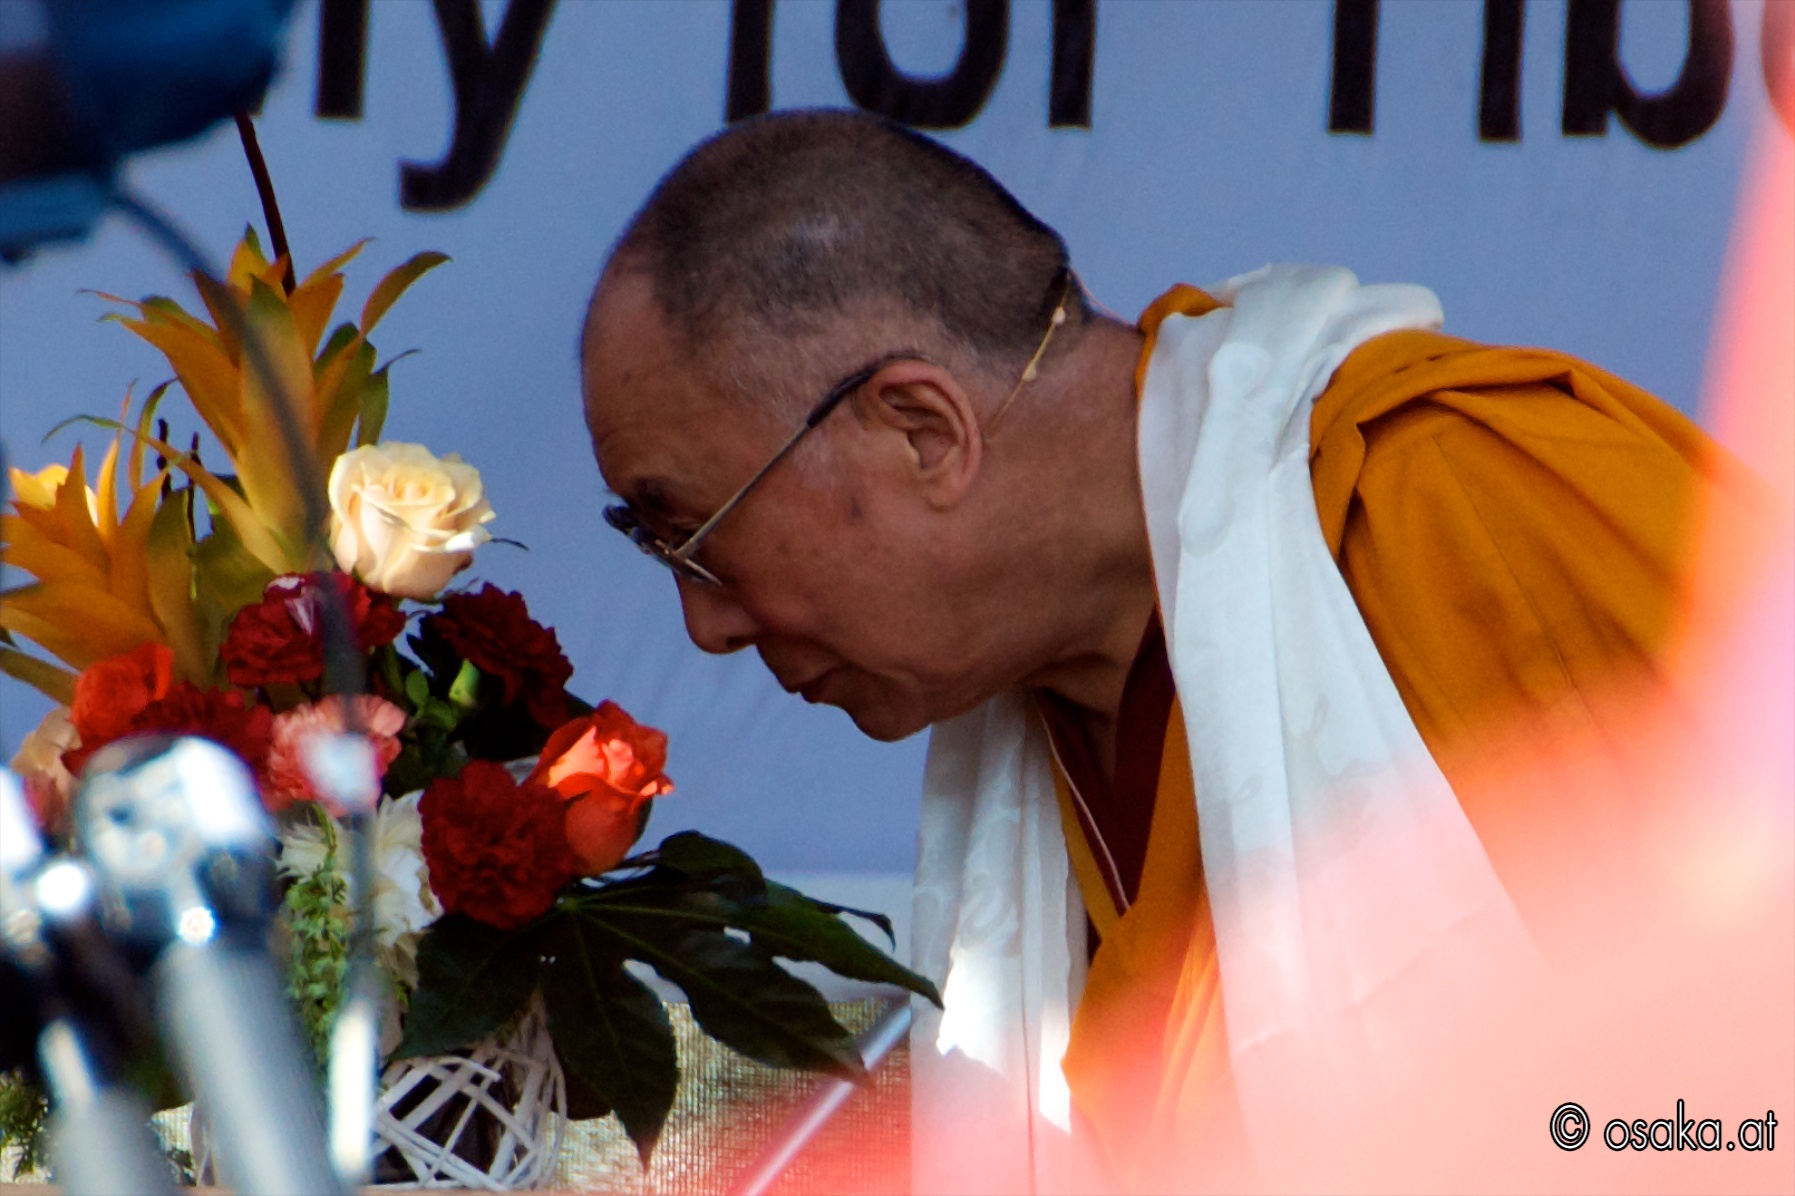 Dalai Lama am Heldenplatz